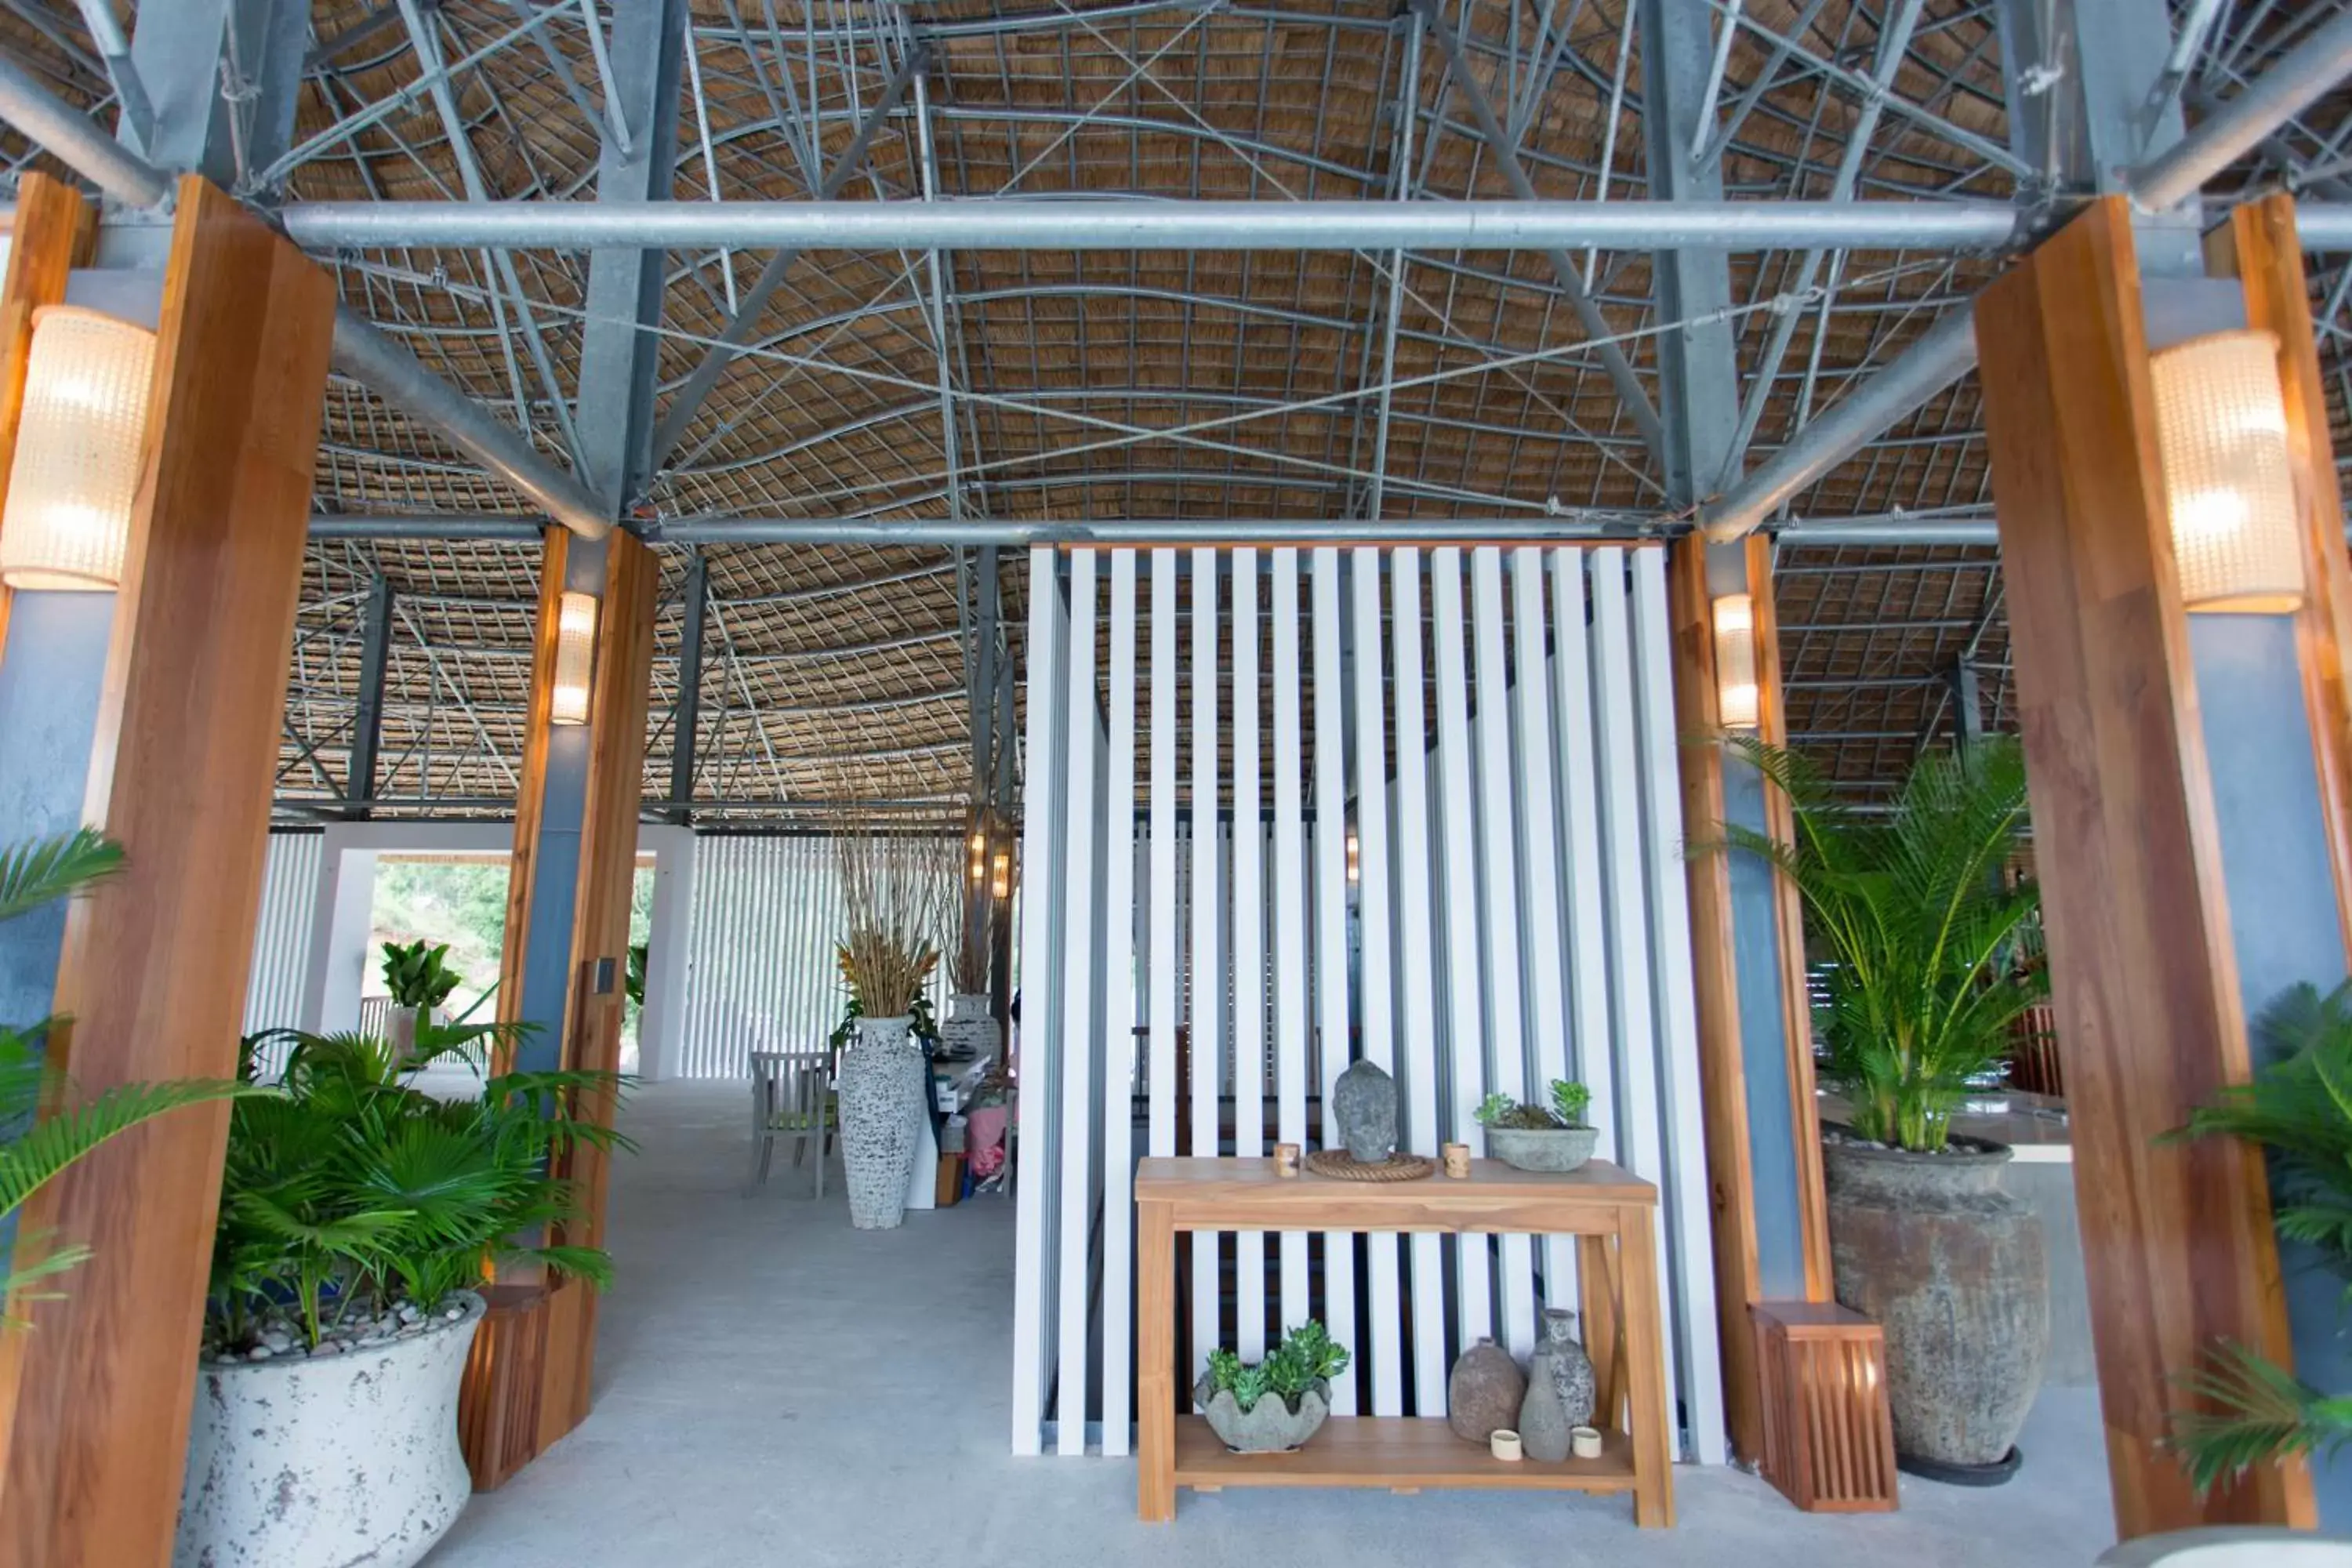 Lobby or reception in Casa Marina Resort